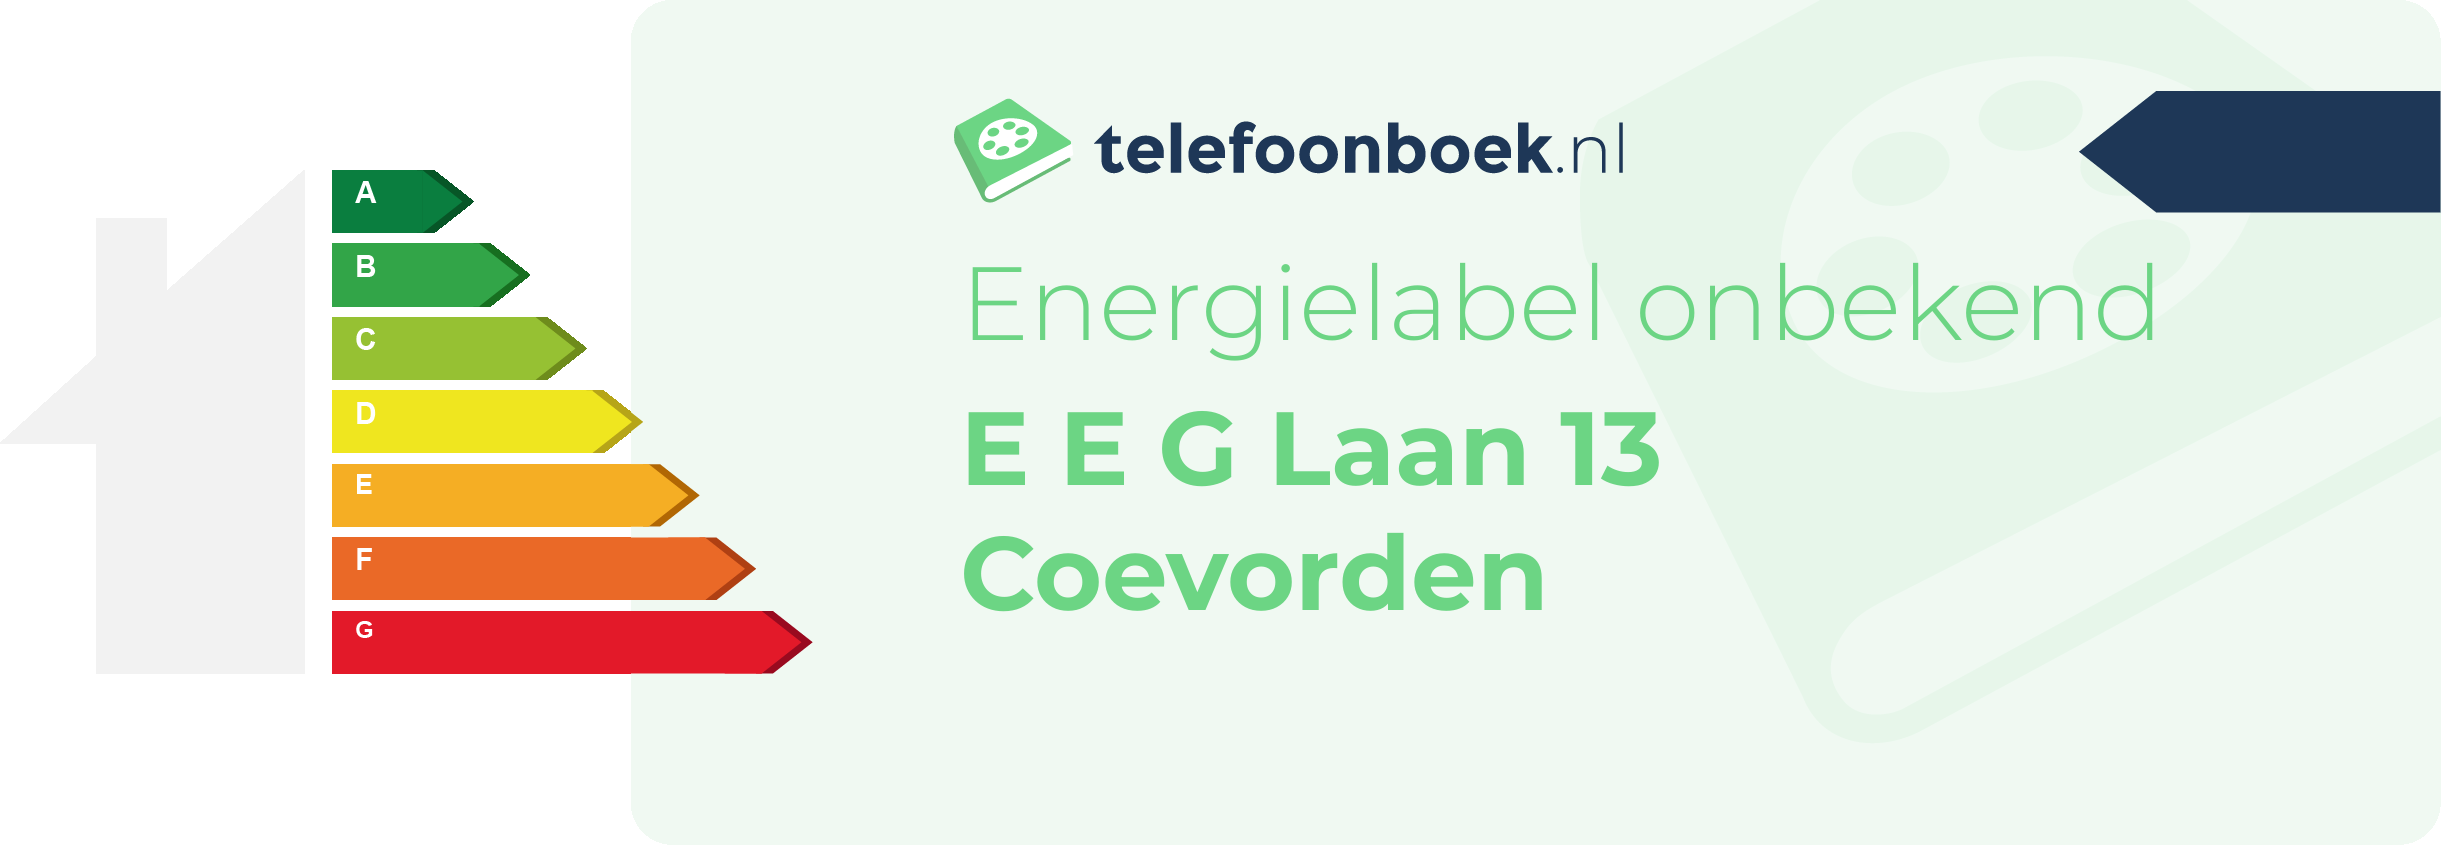 Energielabel E E G Laan 13 Coevorden